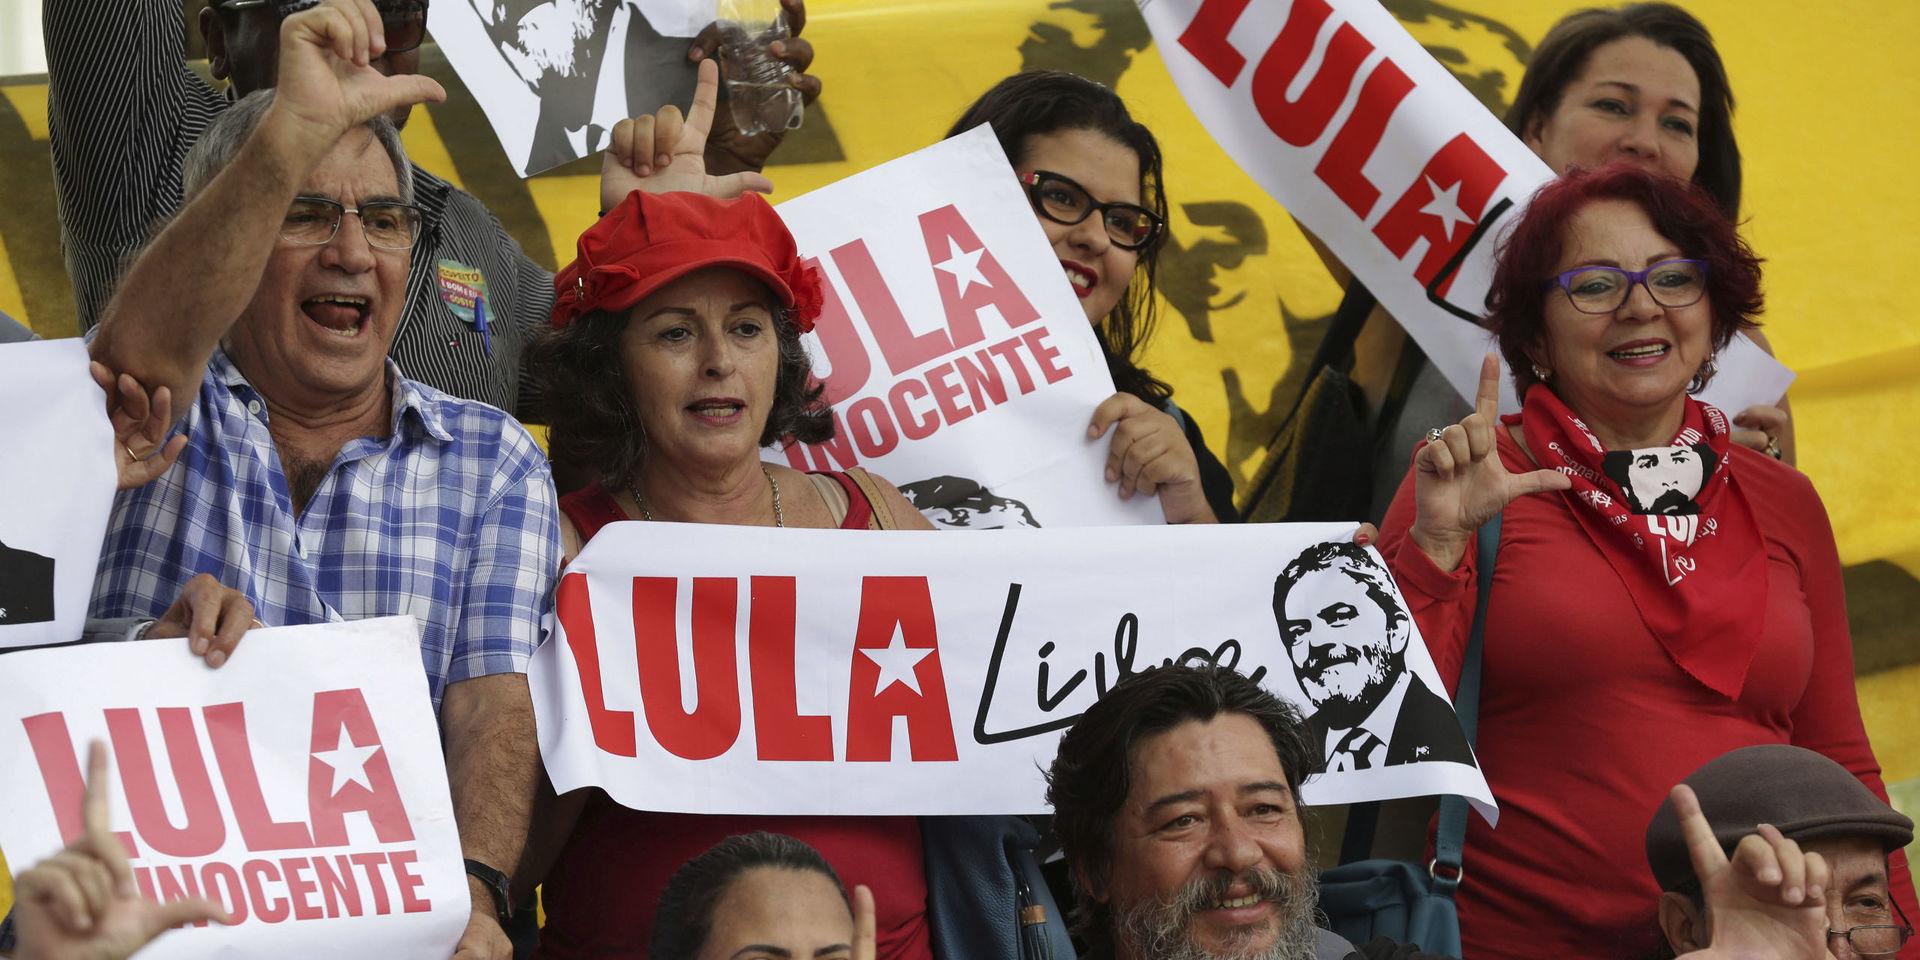 Anhängare till Luiz Inácio Lula da Silva vid en manifestation tidigare i år.